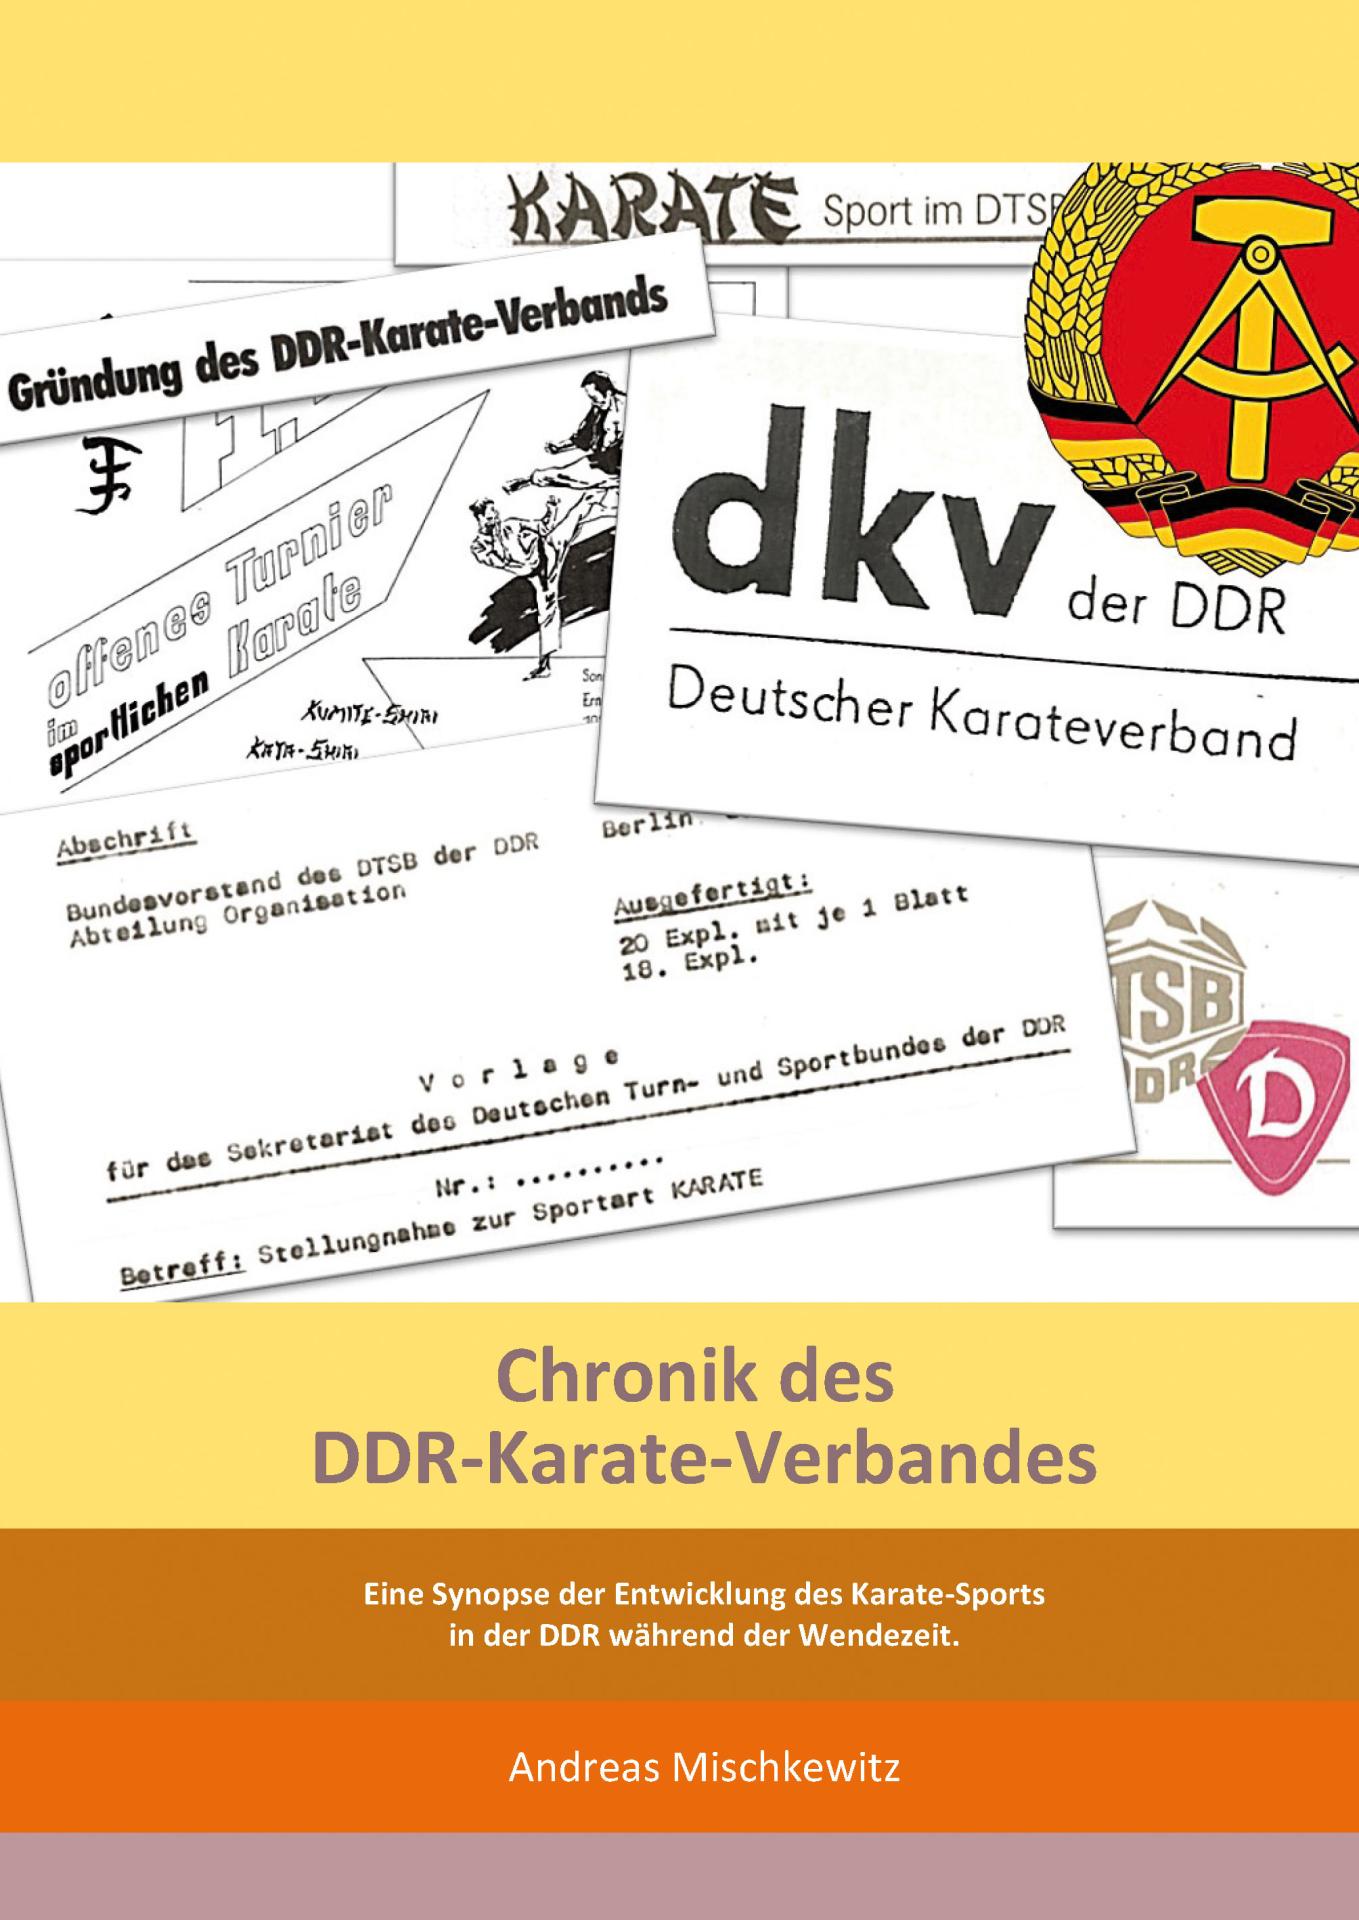 Chronik des DDR-Karate-Verbandes